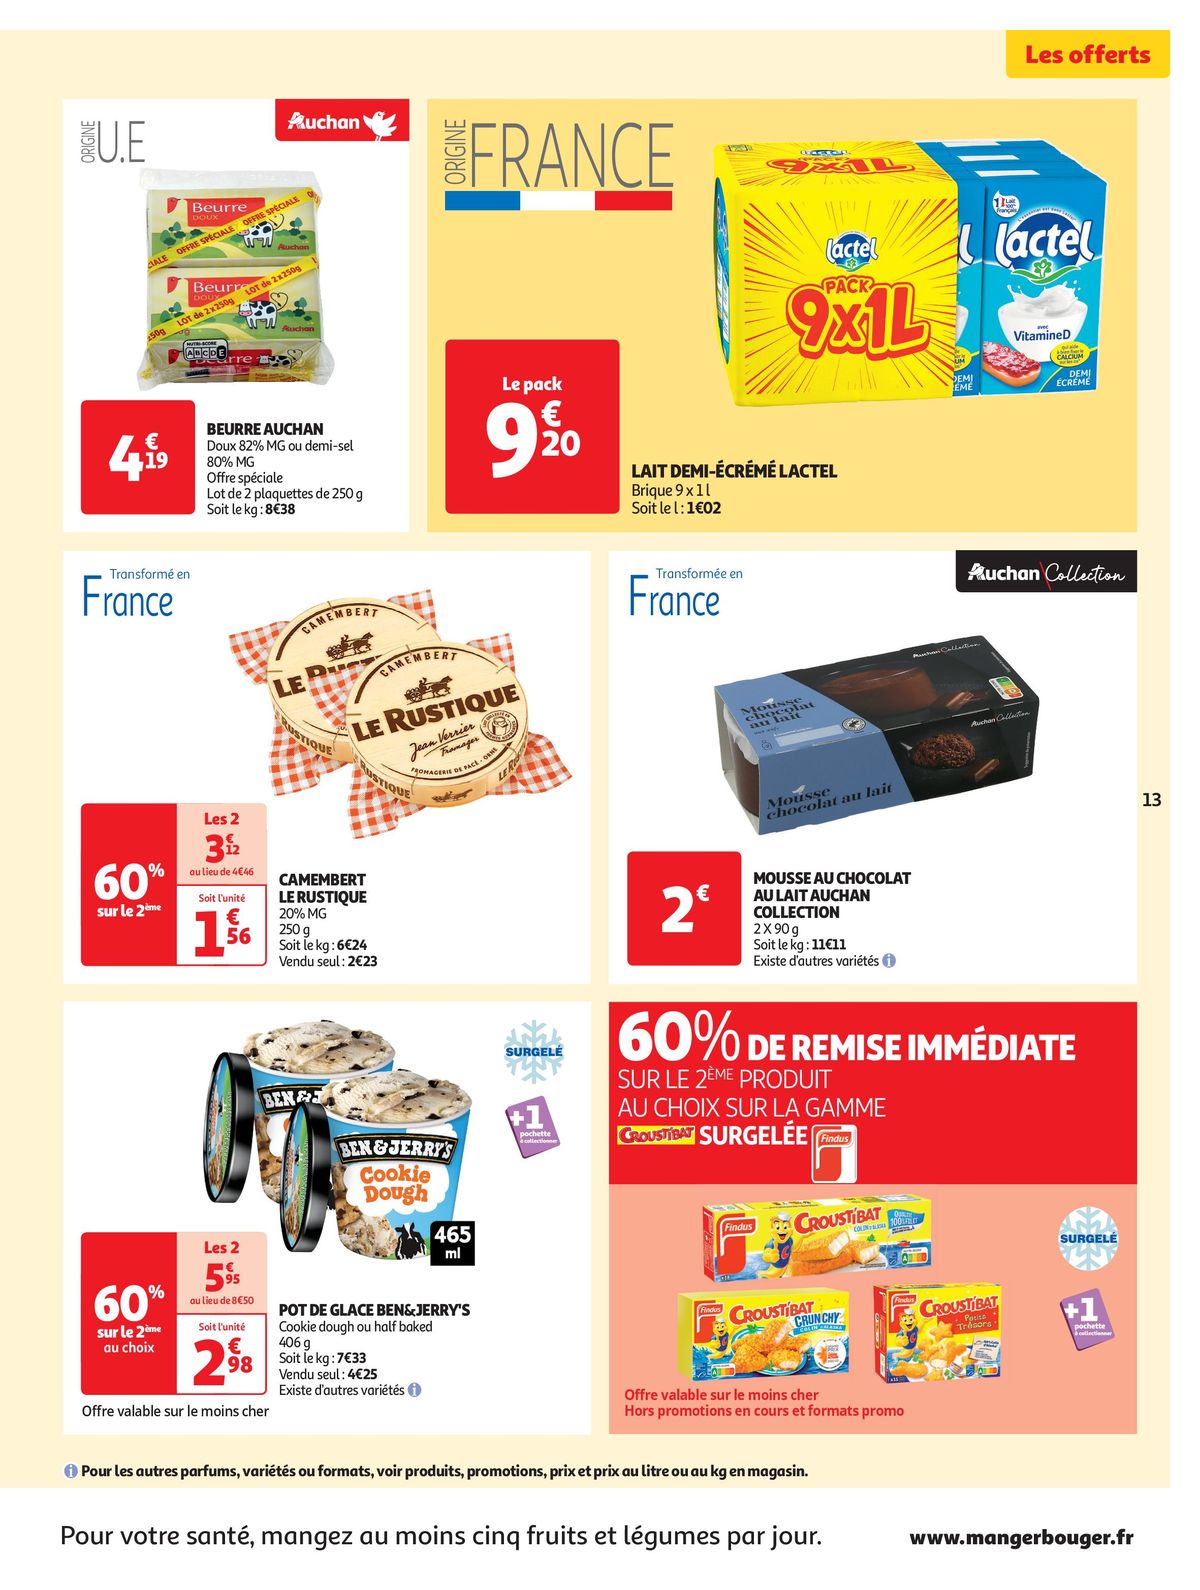 Catalogue Spécial Cuisine Gourmane dans votre supermarché, page 00013